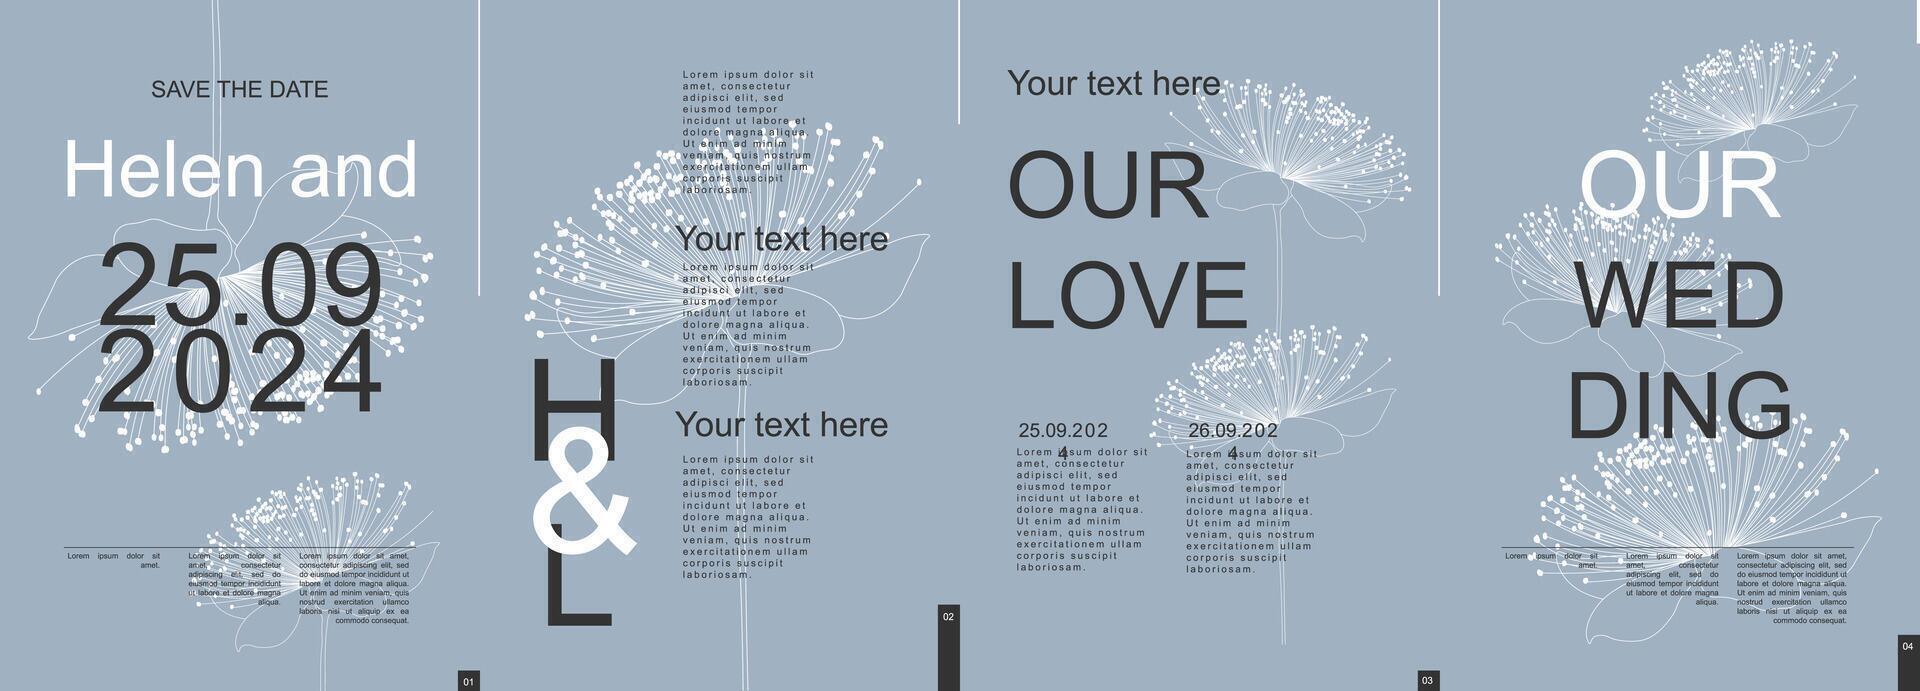 bröllop modern baner med trendig minimalistisk typografi design. affisch mallar med enkel elegant blomma linje silhuetter, datum och text element för ceremoni inbjudan. vektor illustration.